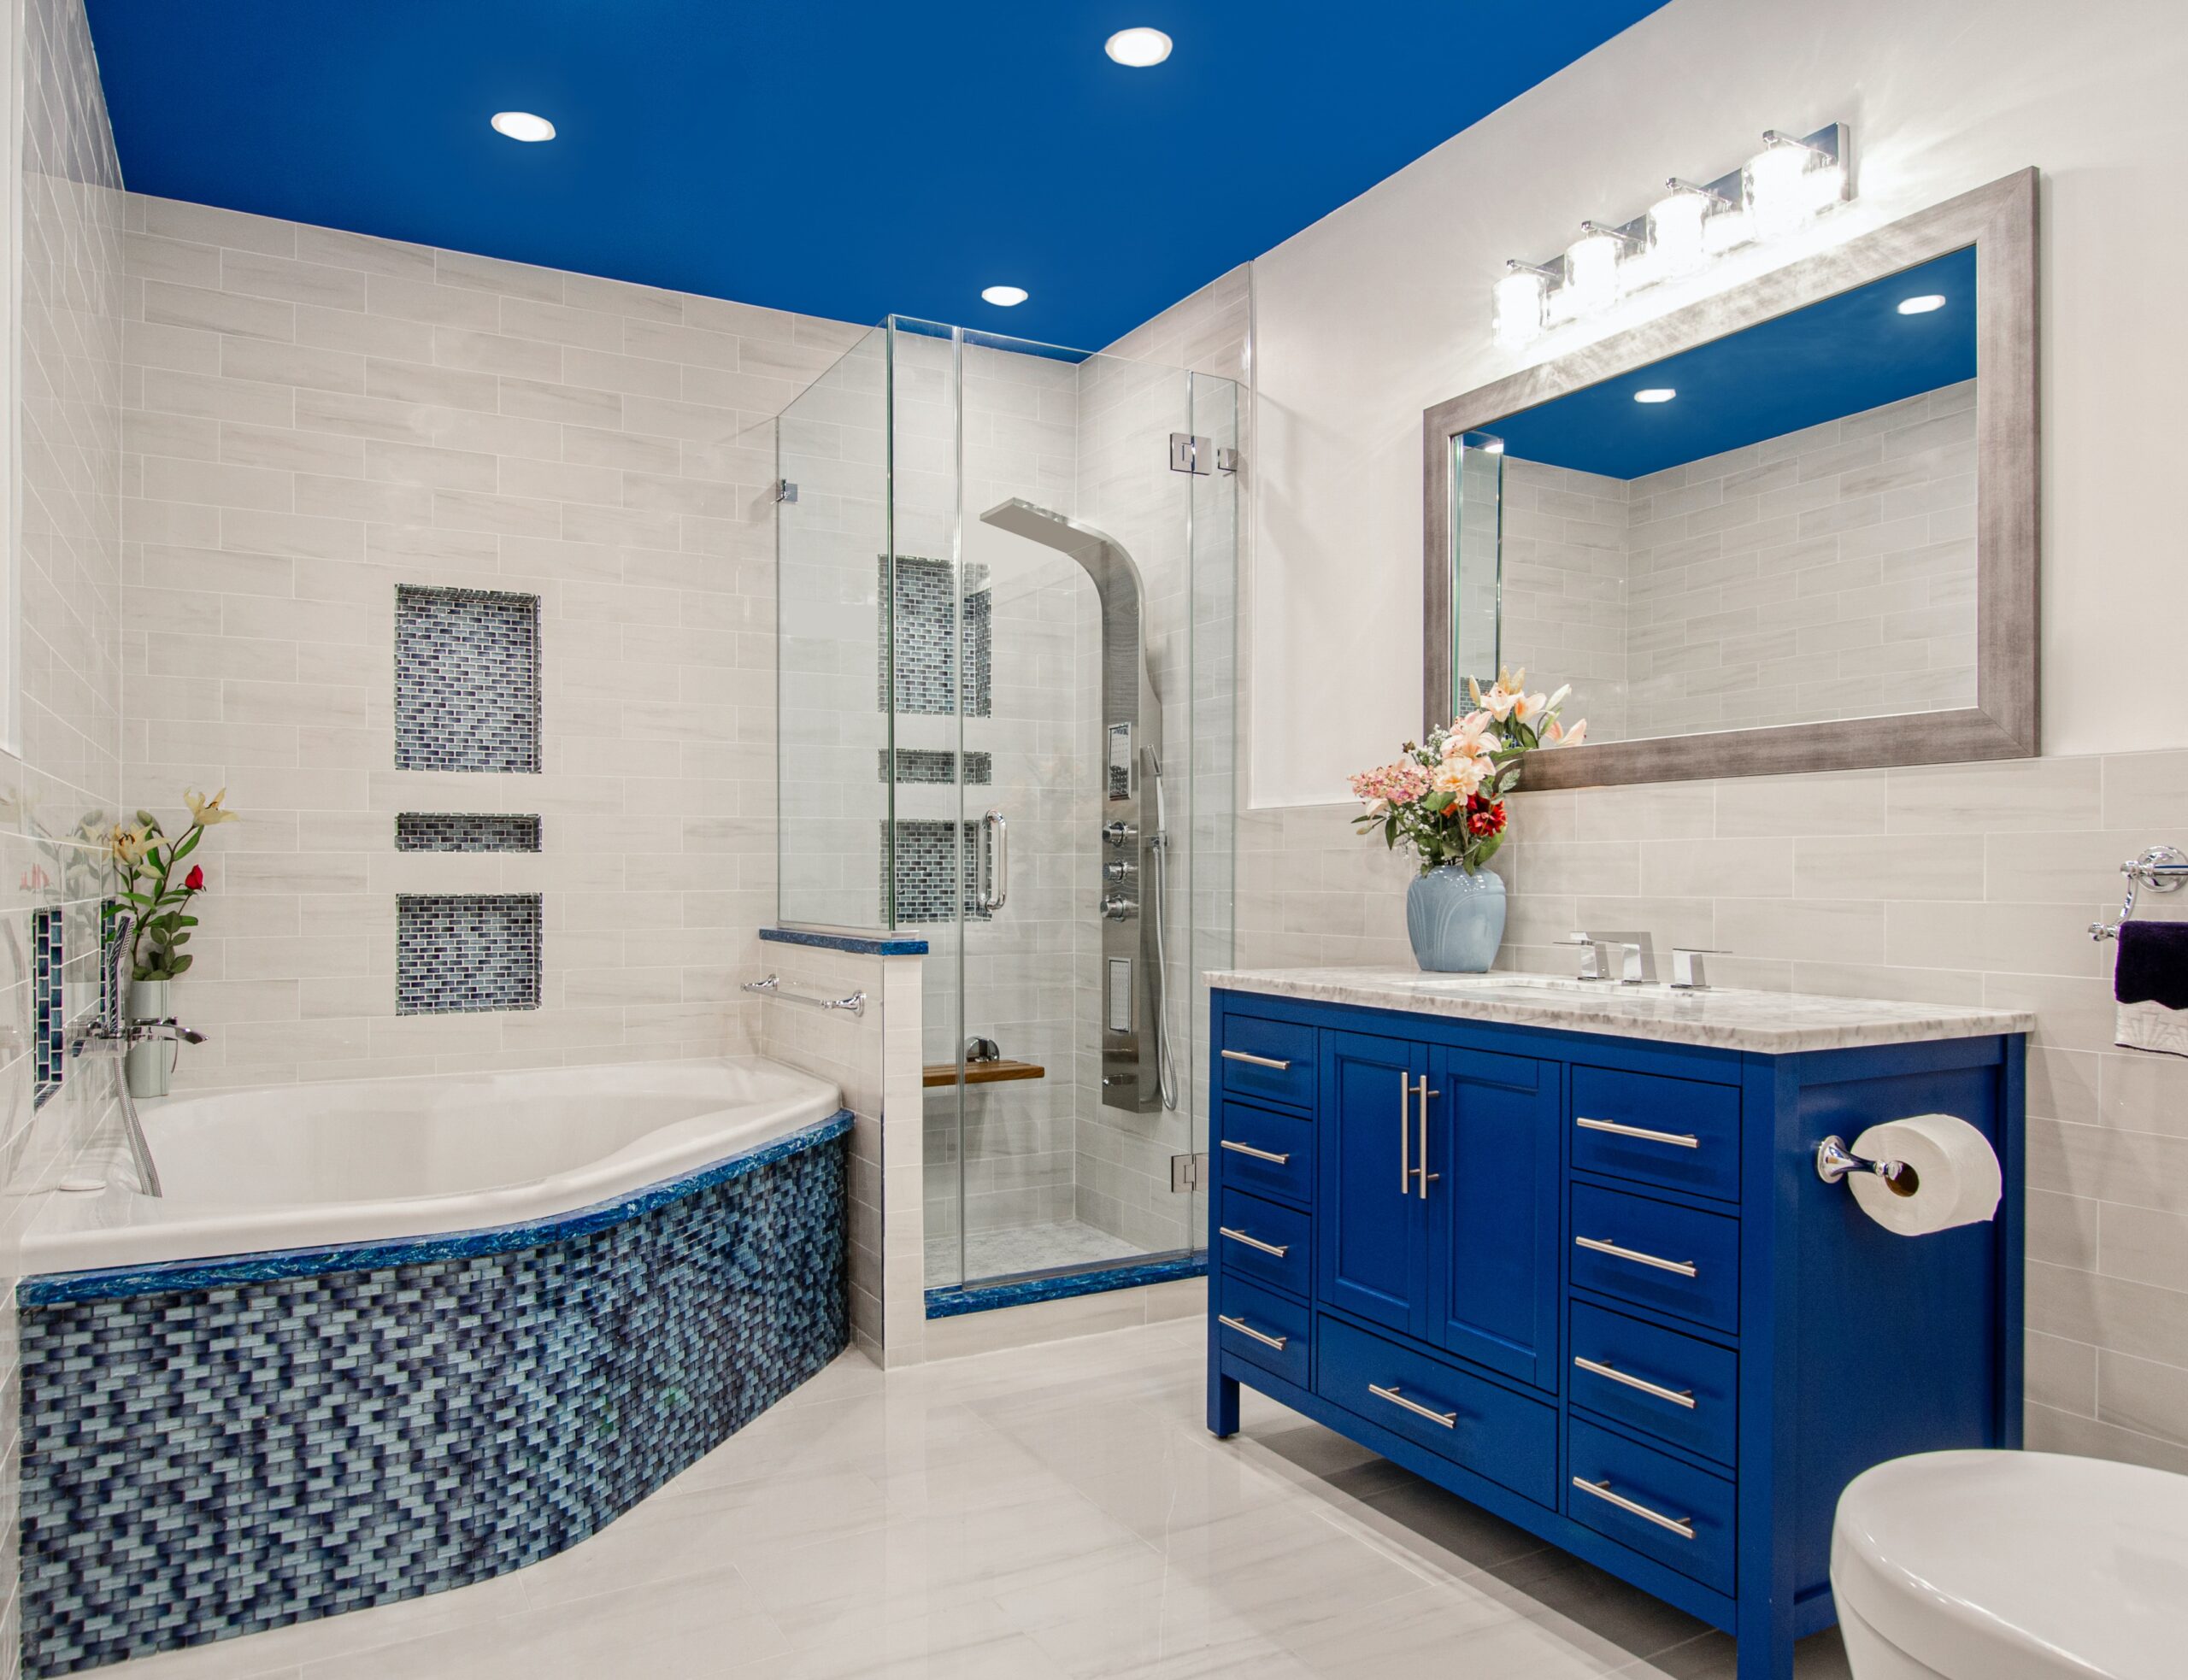 Bathroom Ceiling Ideas - Home & Texture